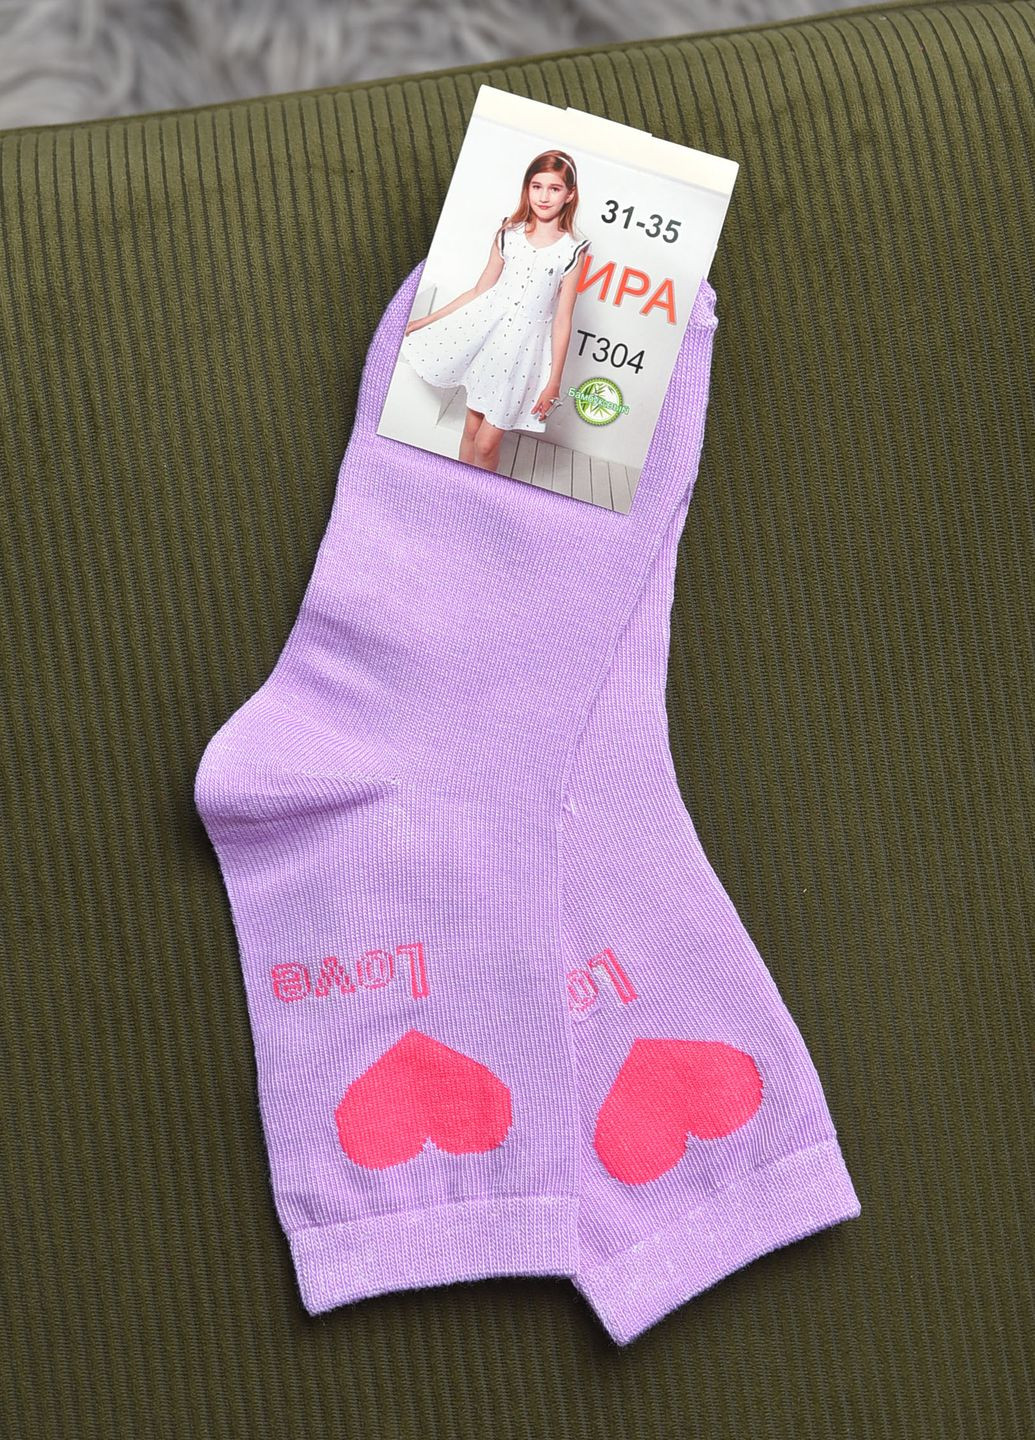 Носки для девочки фиолетового цвета с рисунком Let's Shop (269387605)